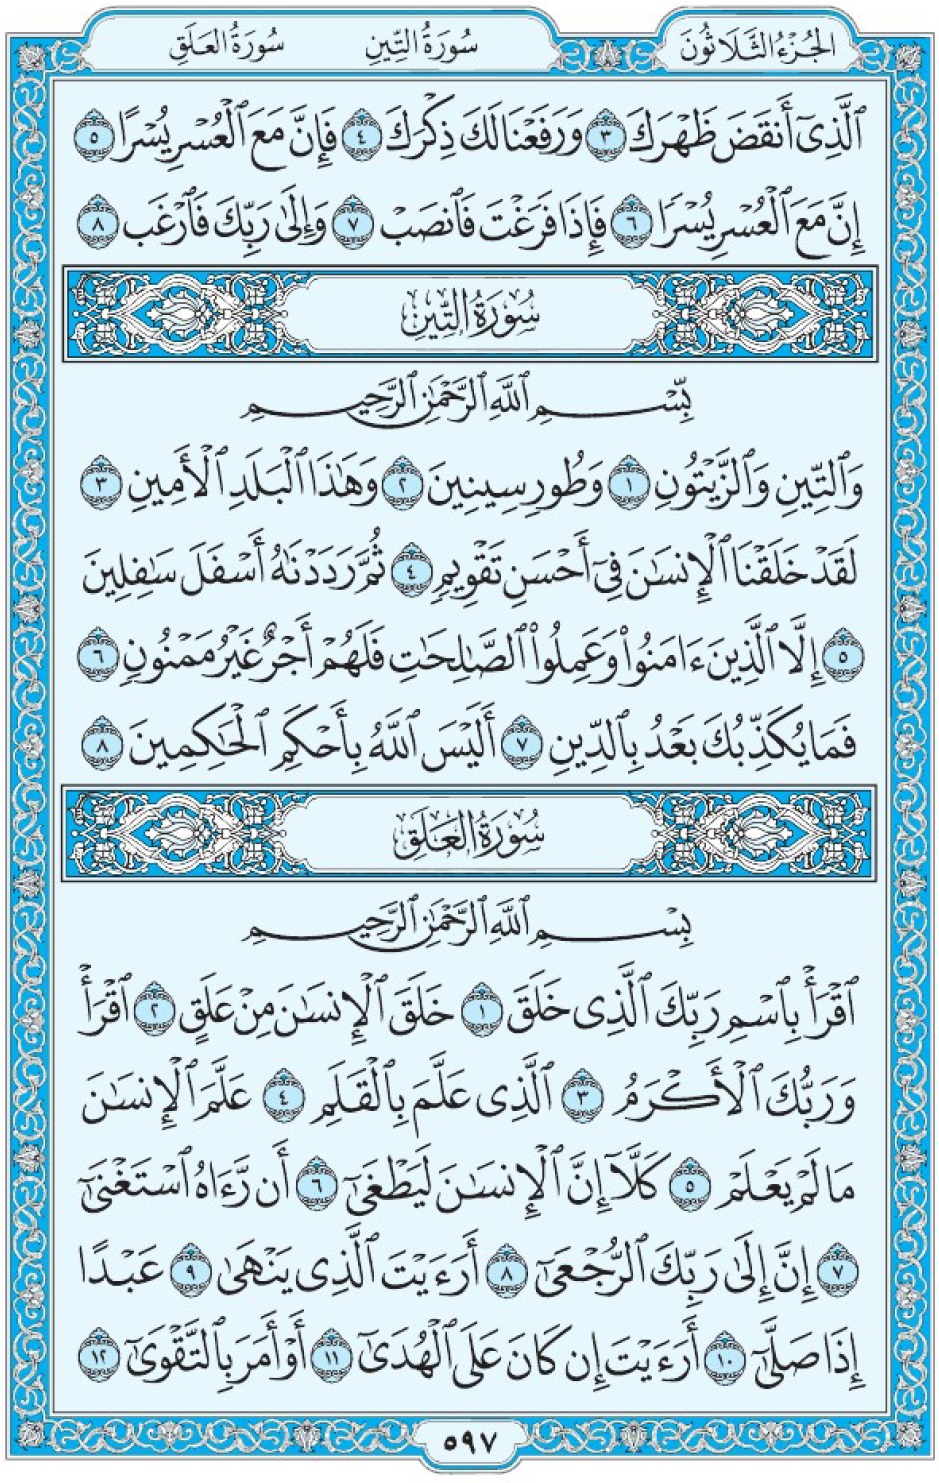 Коран Мединский мусхаф страница 597, сура 95 ат-Тин, 96 аль-Аляк